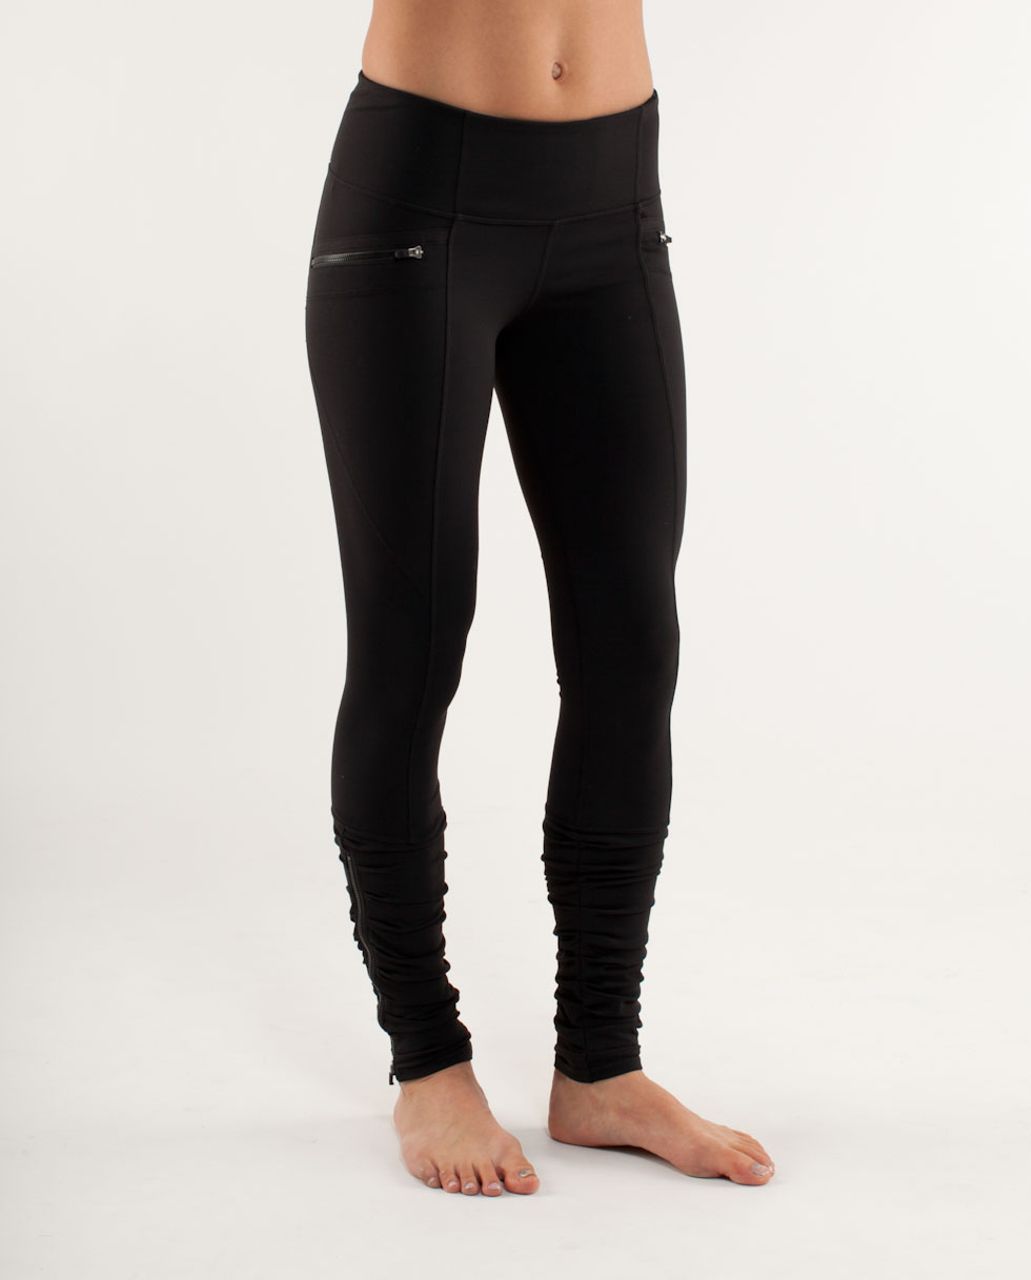 lululemon leggings with zipper pockets